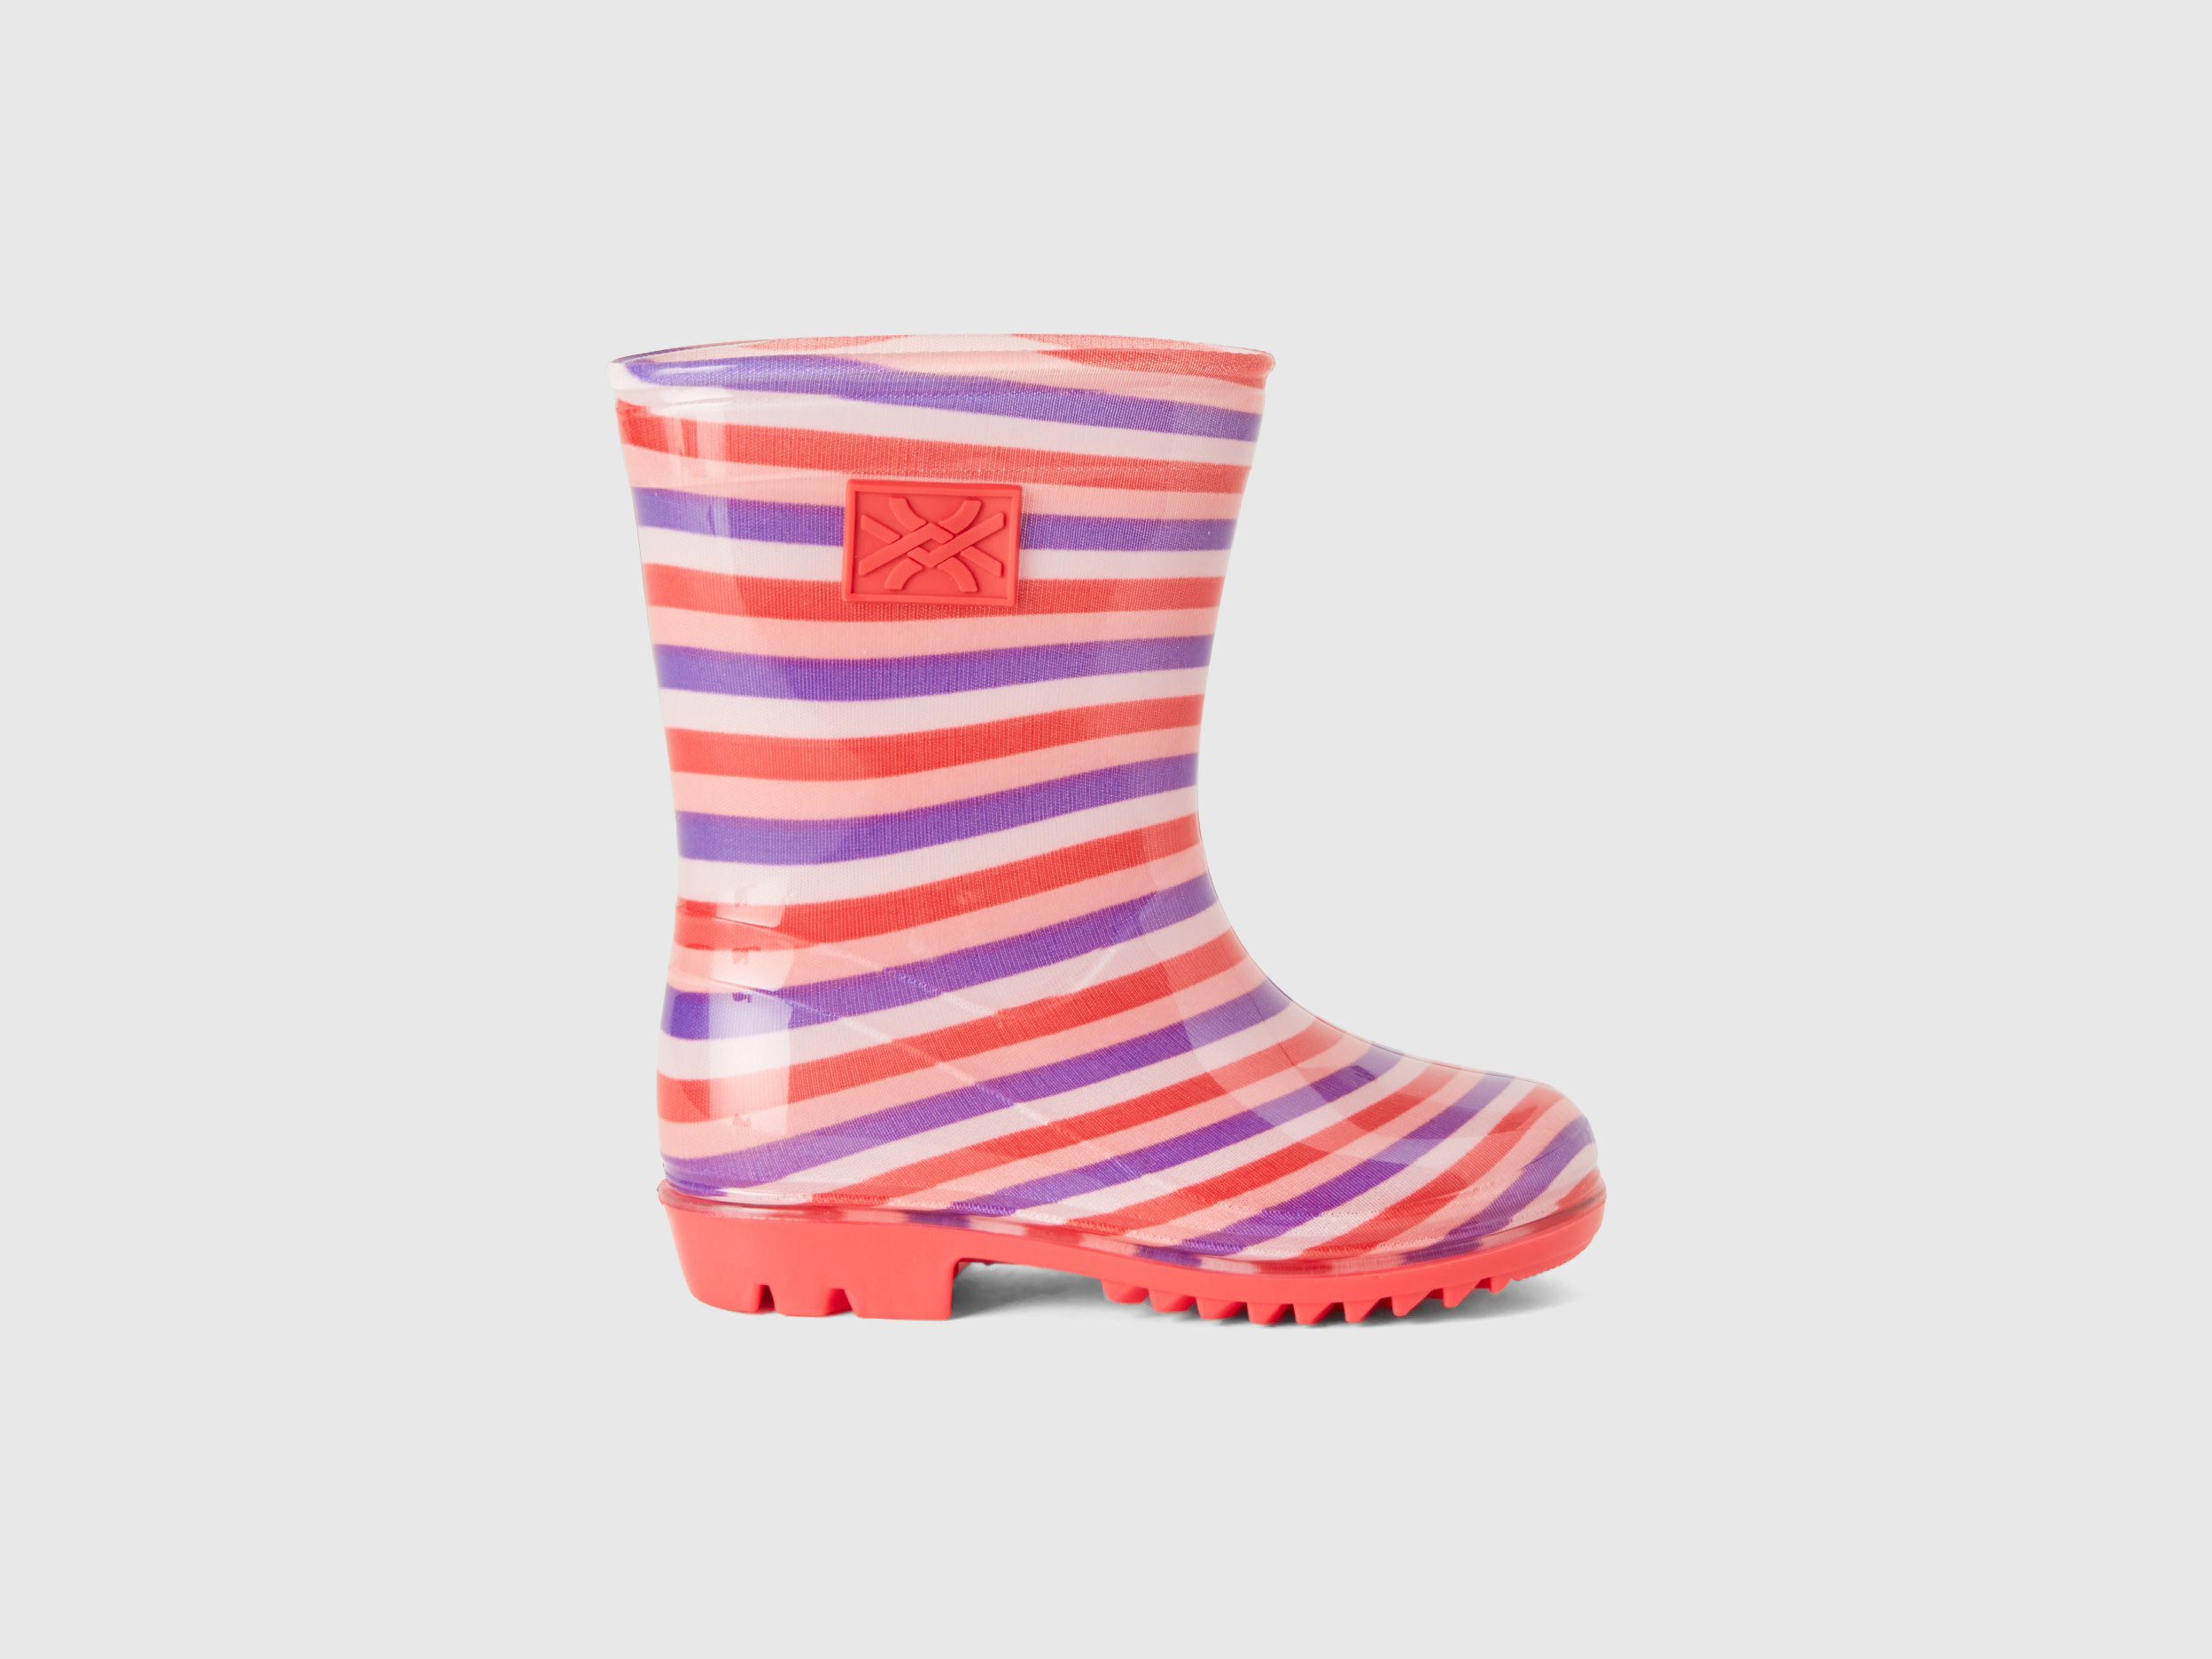 Benetton, Rubber Rain Boots, size 12C, Multi-color, Kids